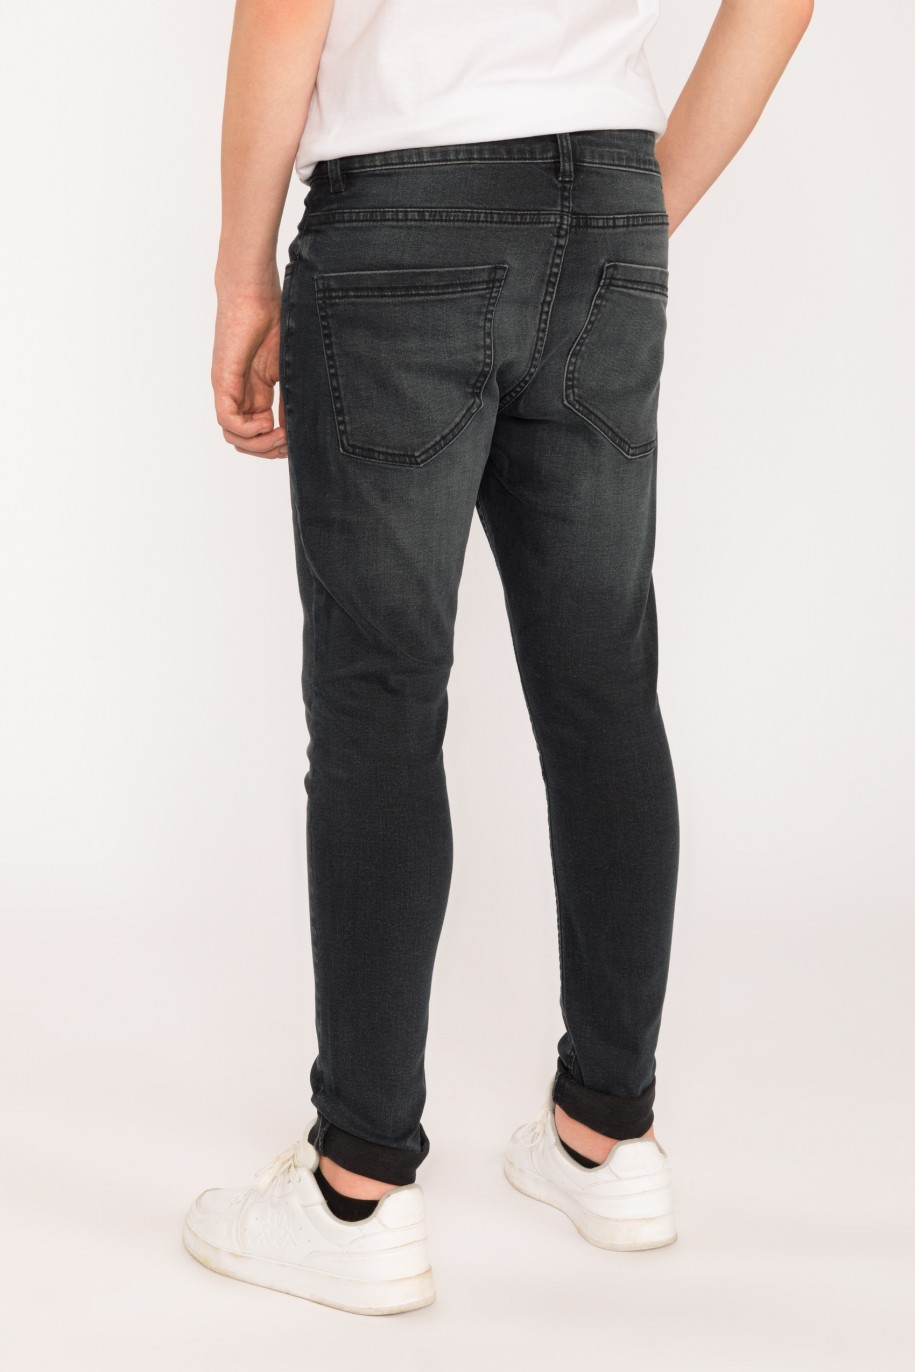 Granatowe jeansowe spodnie dla chłopaka Regular - 29519